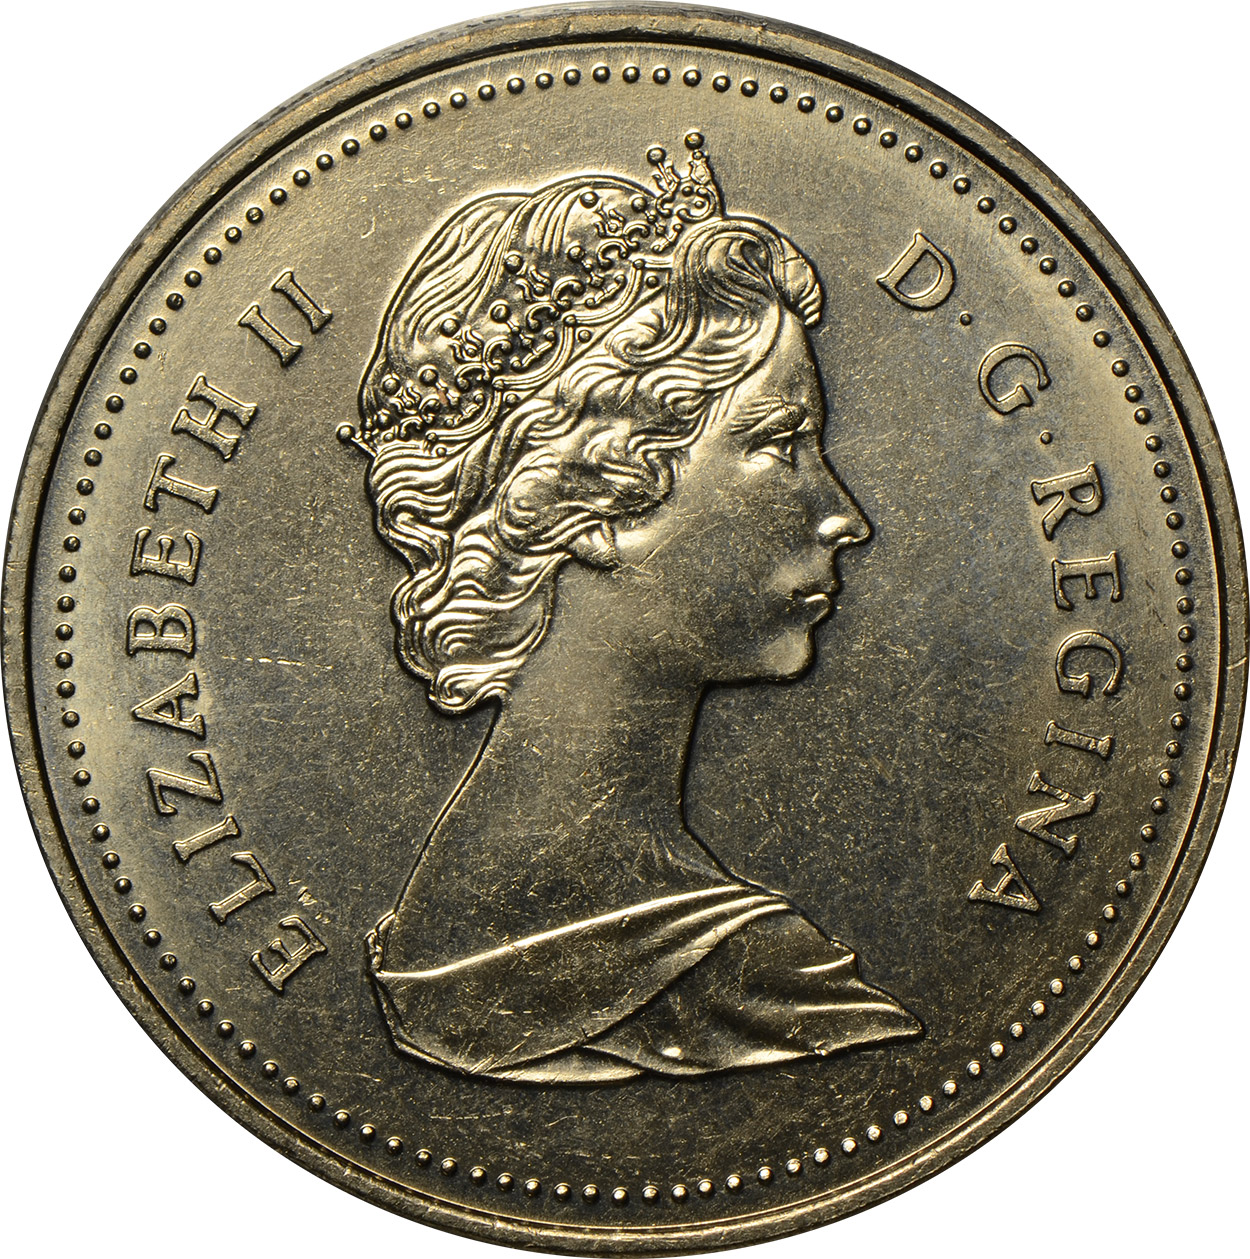 MS-60 - 1 dollar 1965 to 1989 - Elizabeth II